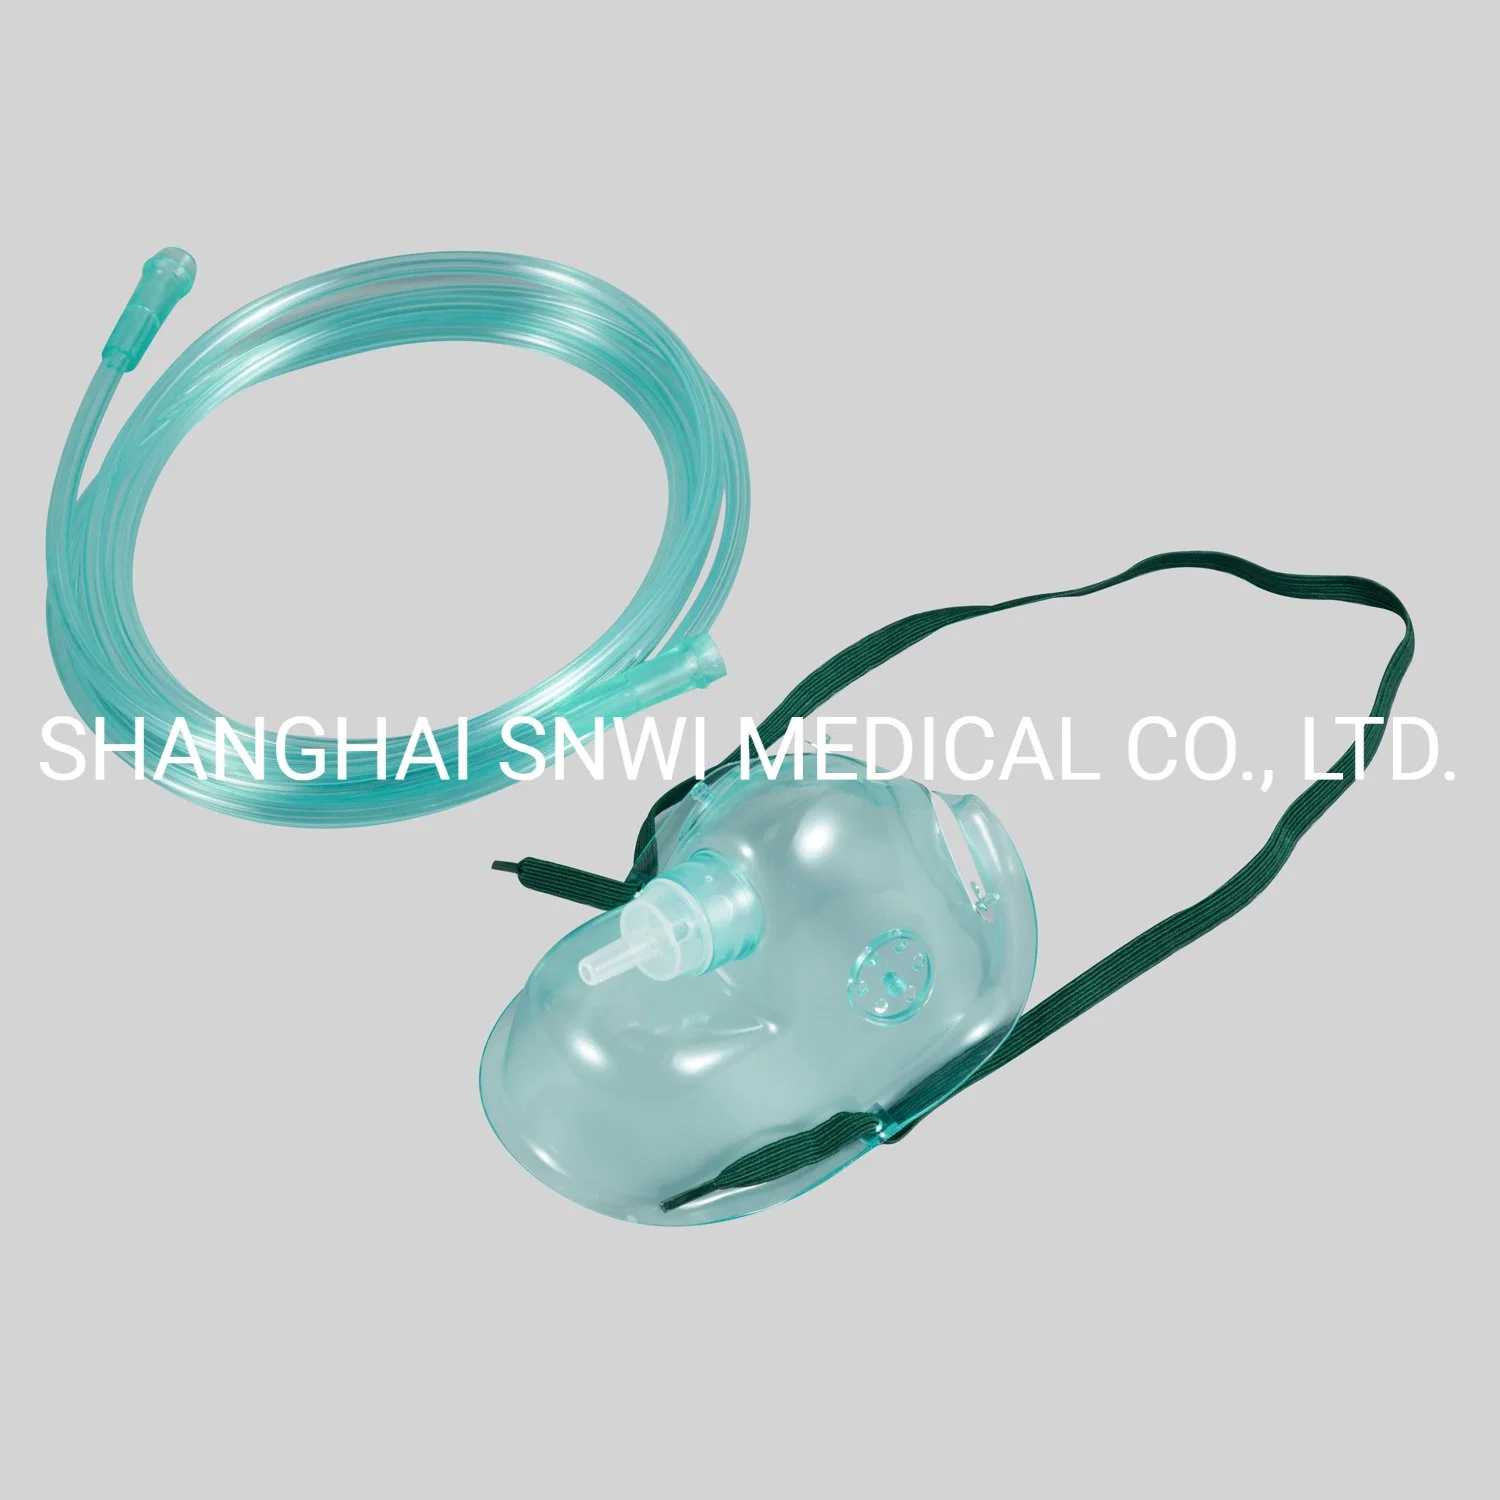 Masque facial jetable en PVC médical approuvé CE ISO pour l'oxygène à usage hospitalier/Kit de masque nébuliseur/Masque Venturi/Masque à oxygène avec sac réservoir.